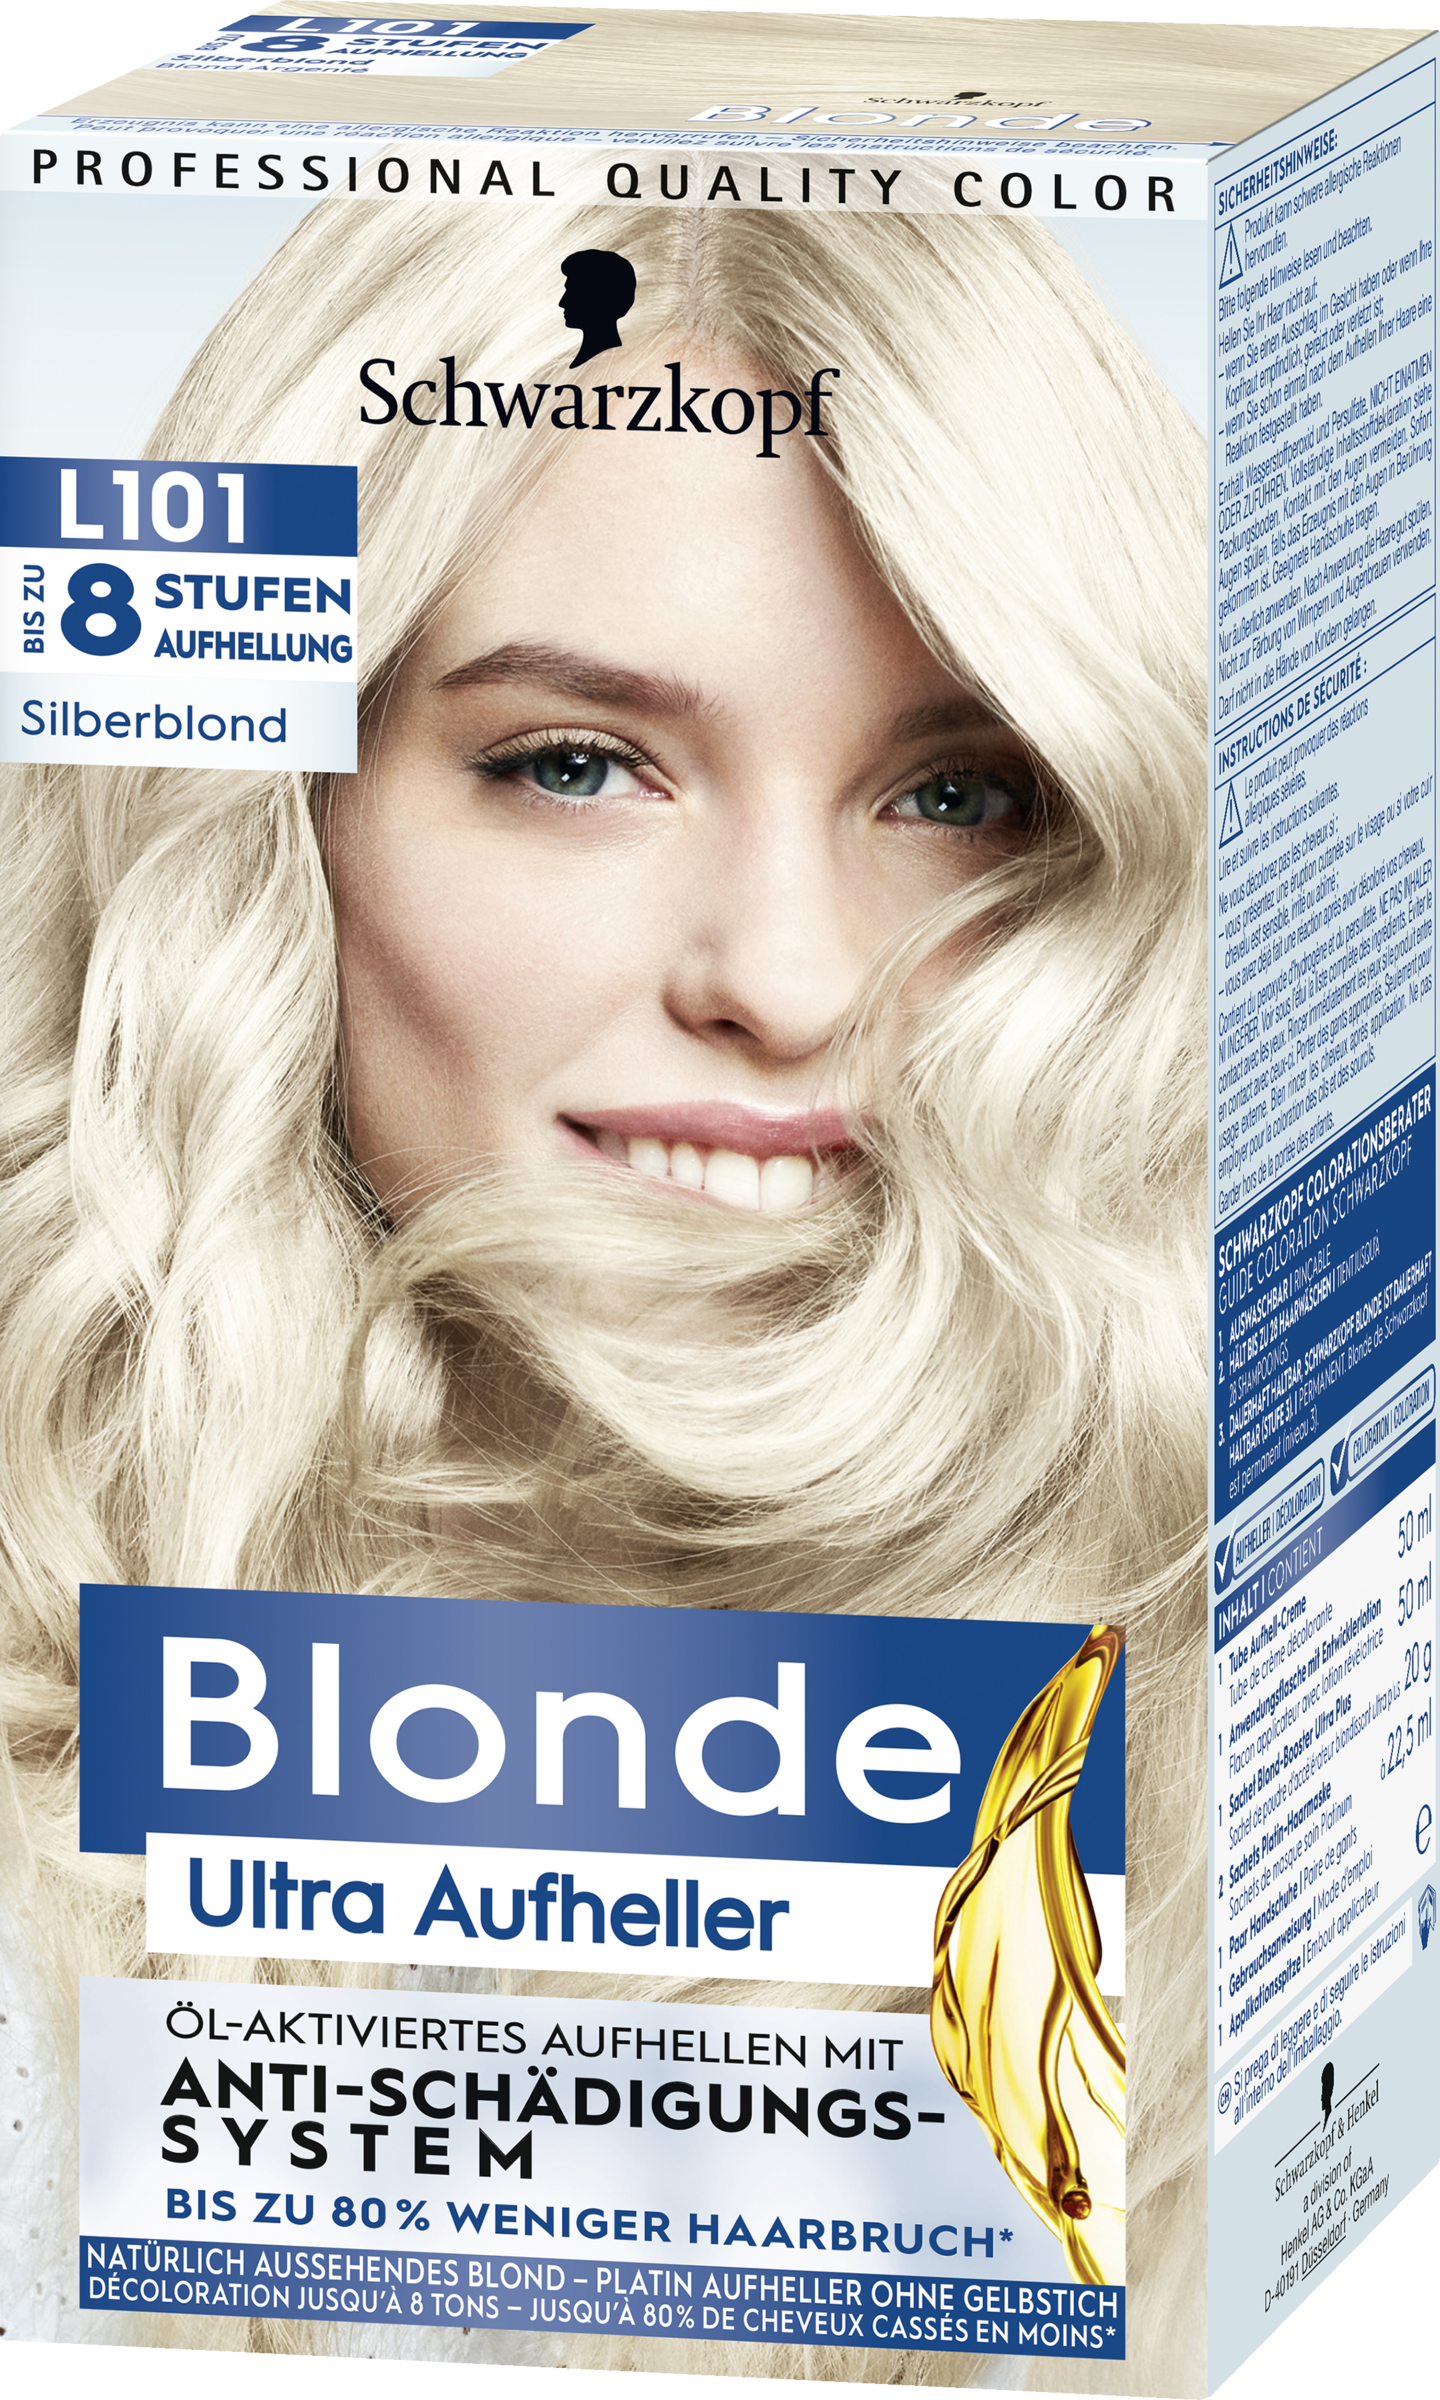 Schwarzkopf Blonde Blonde Ultra Afbleger Sølvblond L101 - Trin 3 køb ind på  nettet | rossmann.dk